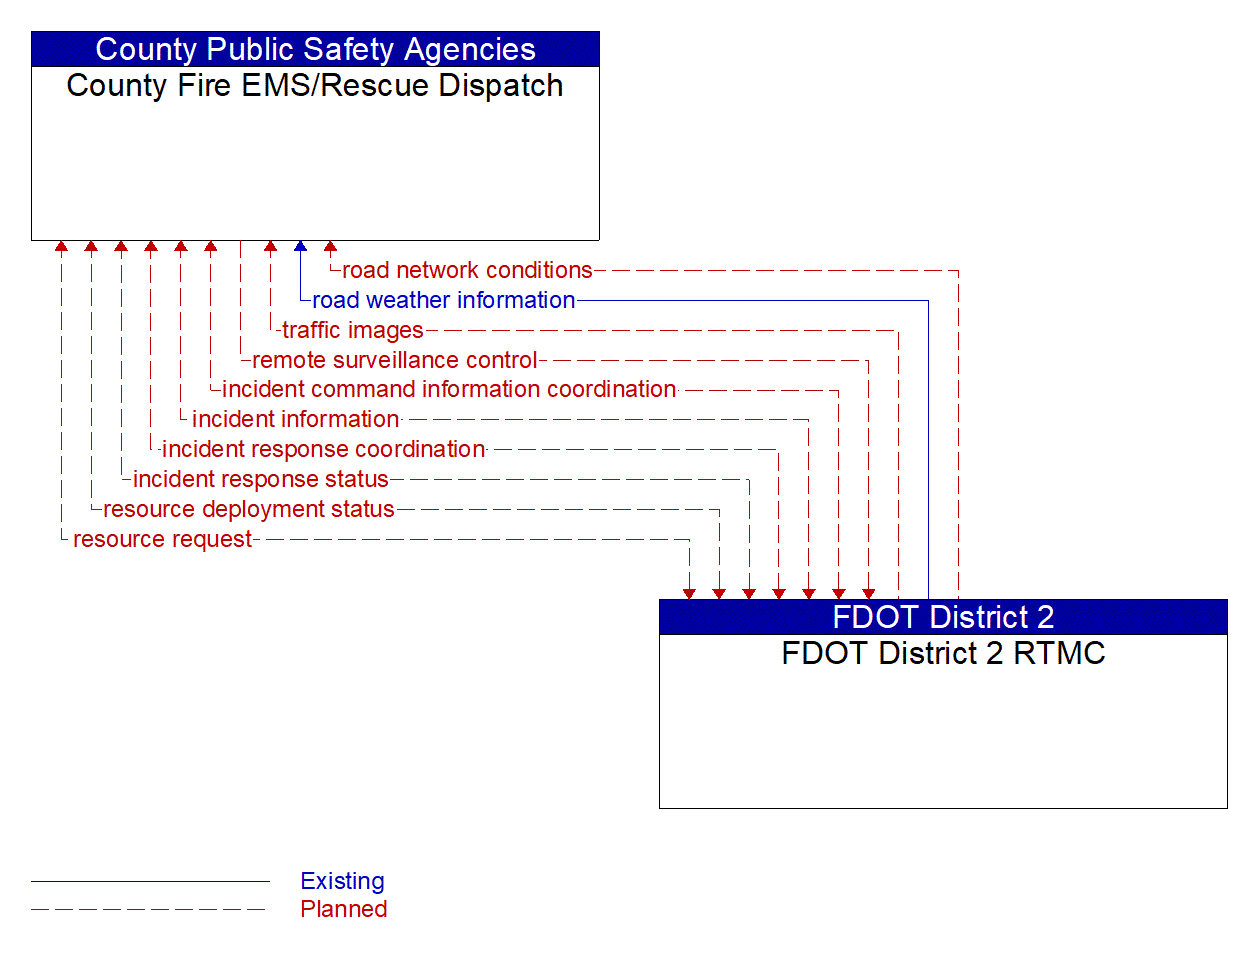 Architecture Flow Diagram: FDOT District 2 RTMC <--> County Fire EMS/Rescue Dispatch